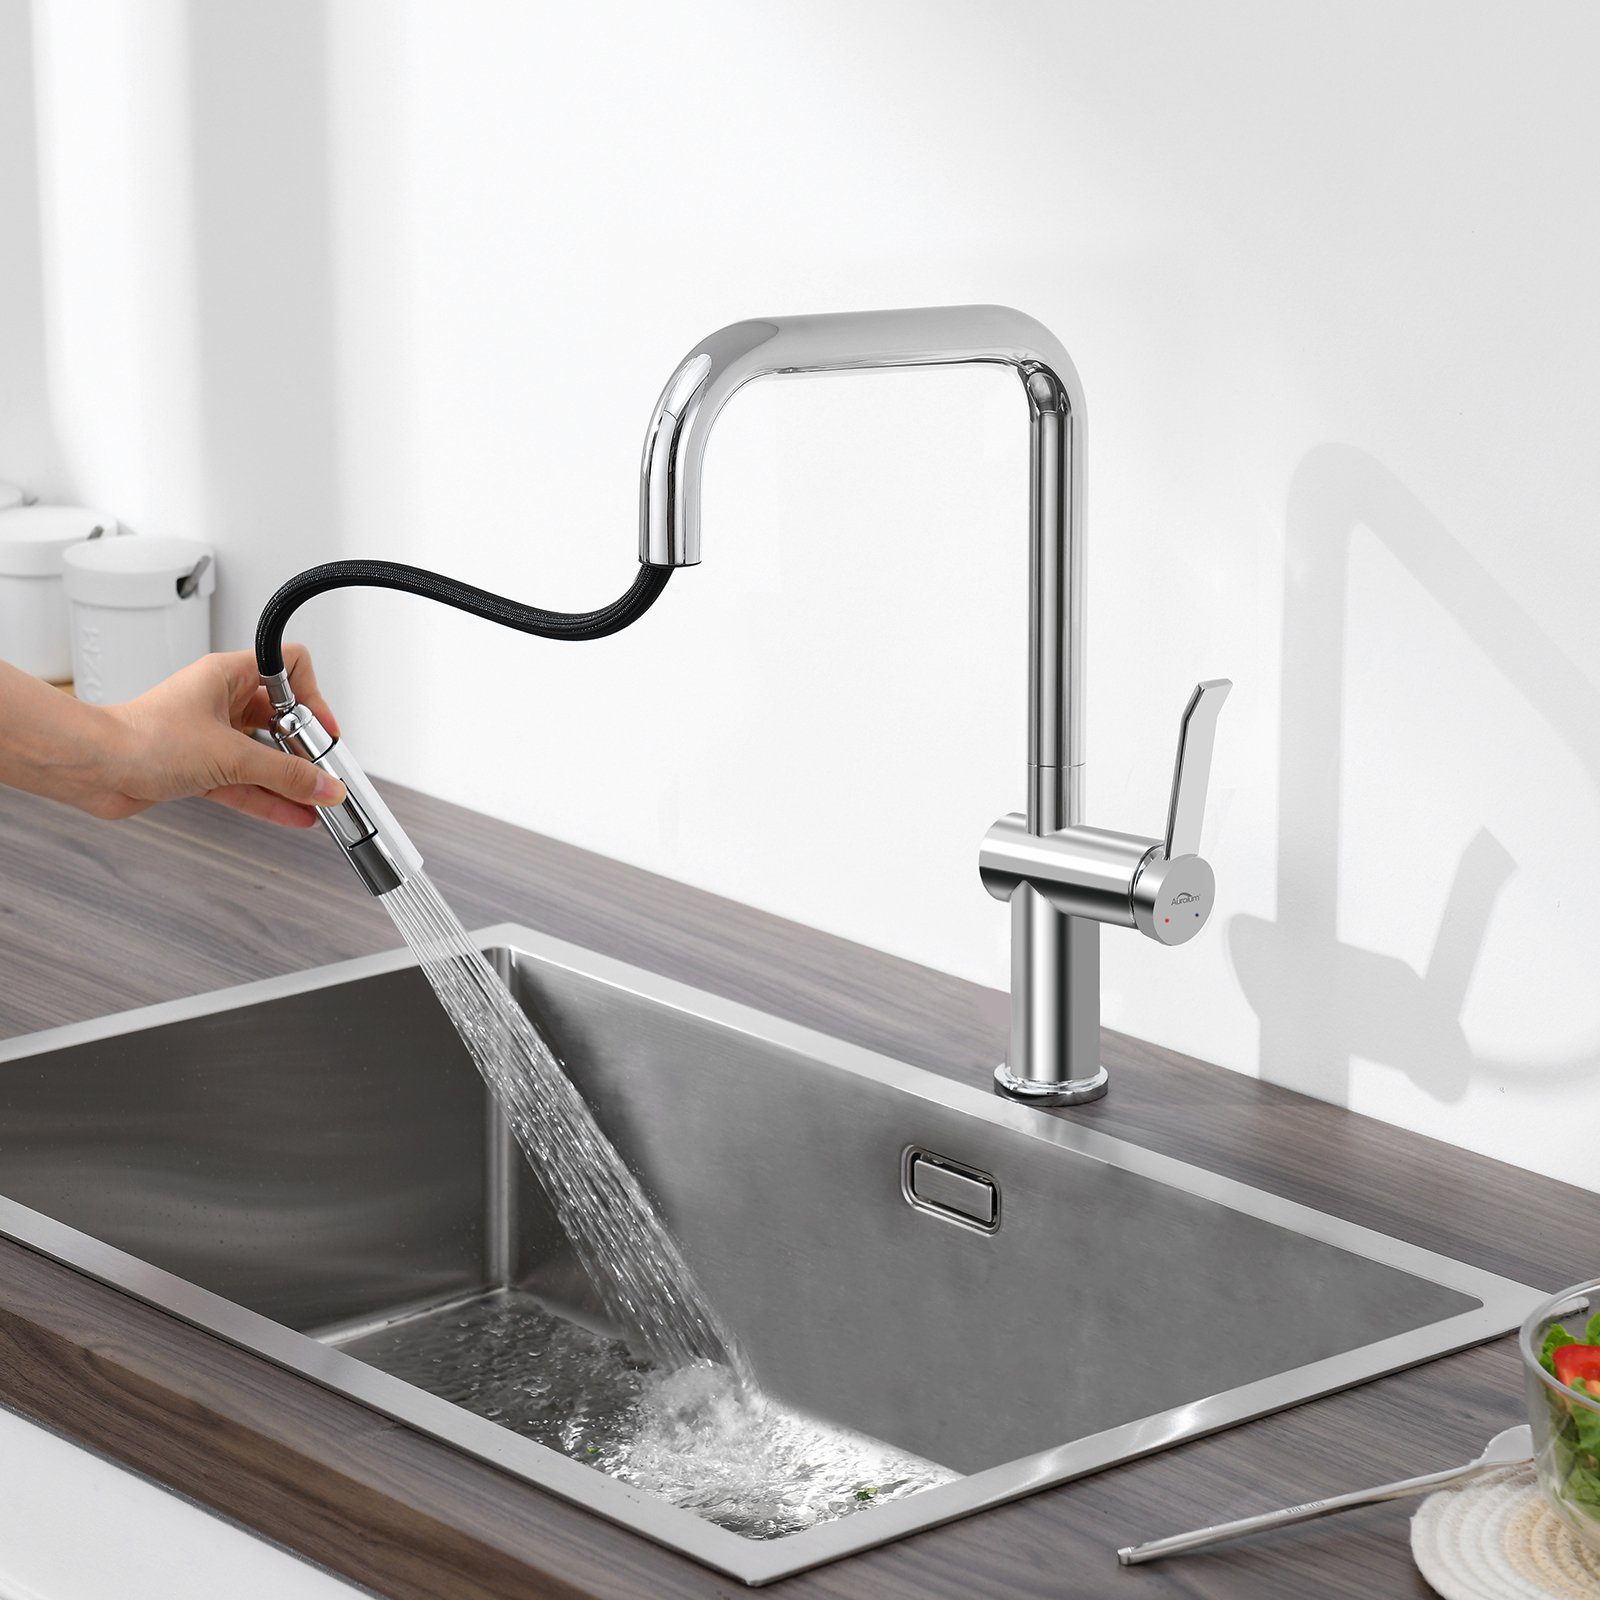 Ausziehbar Brause Küchenarmatur Auralum Edelstahl Silber Küchenarmatur 2 Wasserhahn 360°Drehbar